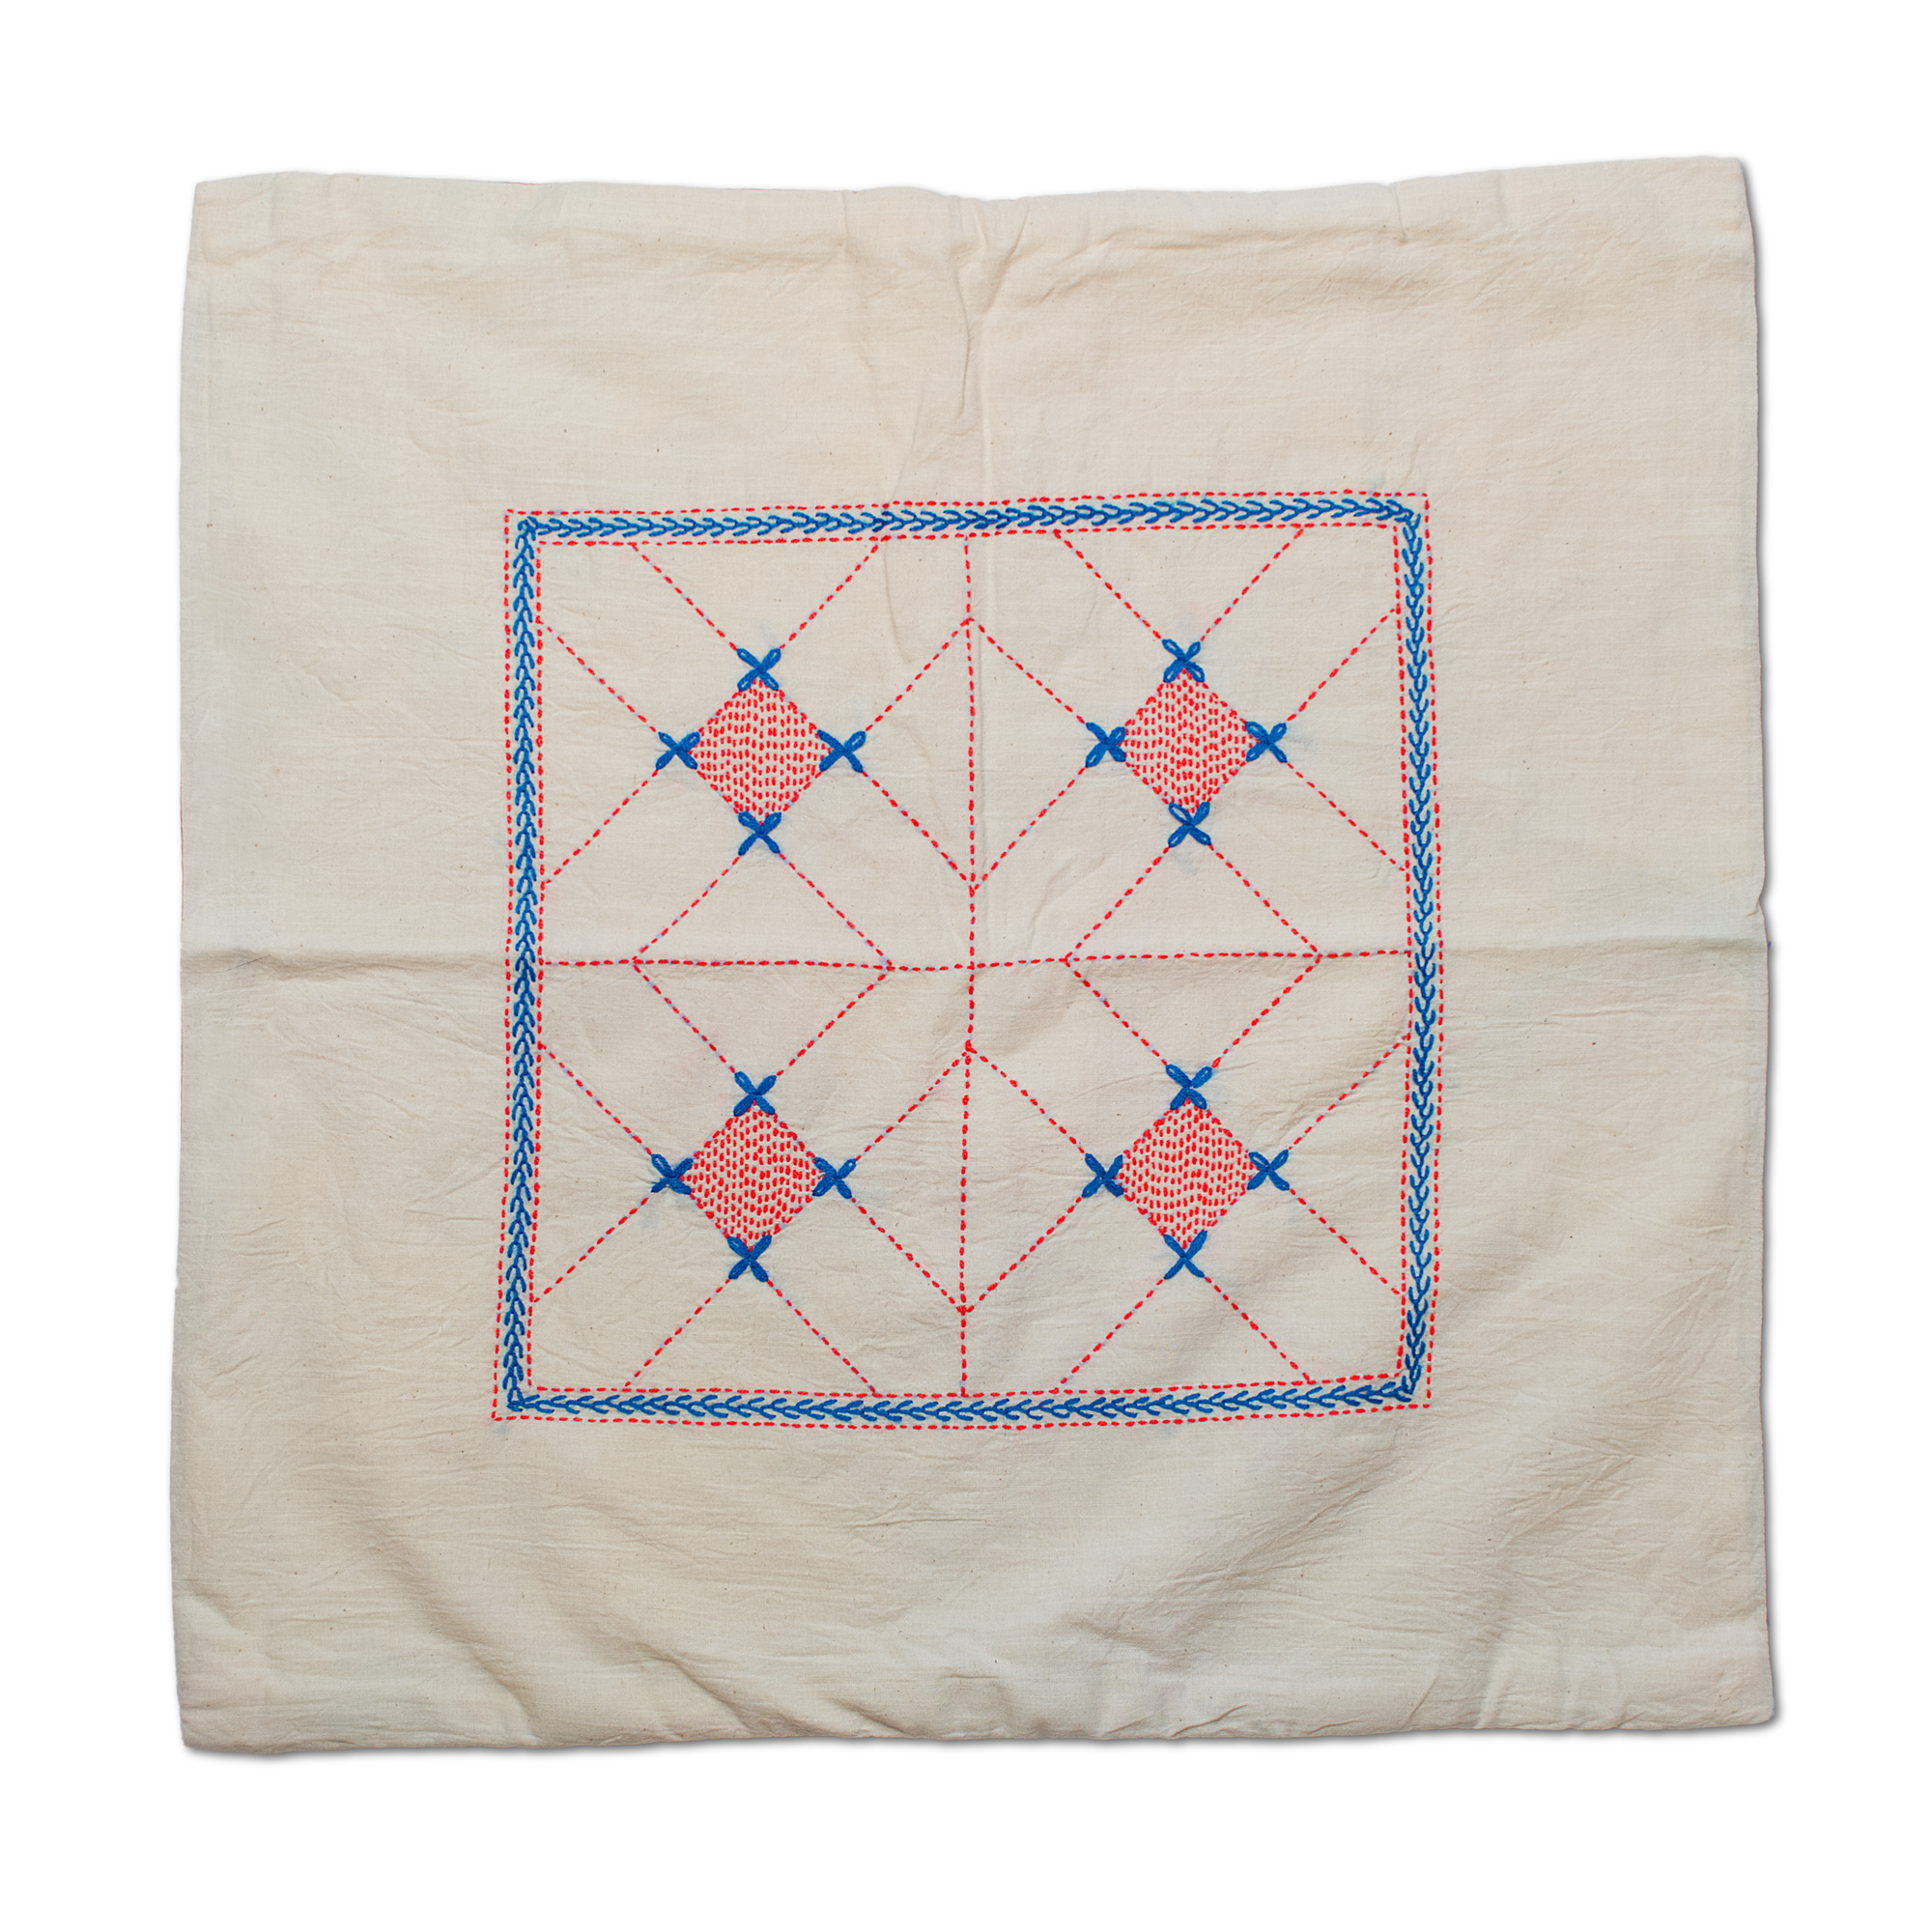 Cushion Covers - Kurigram (geometric) Design - Asfara (White)